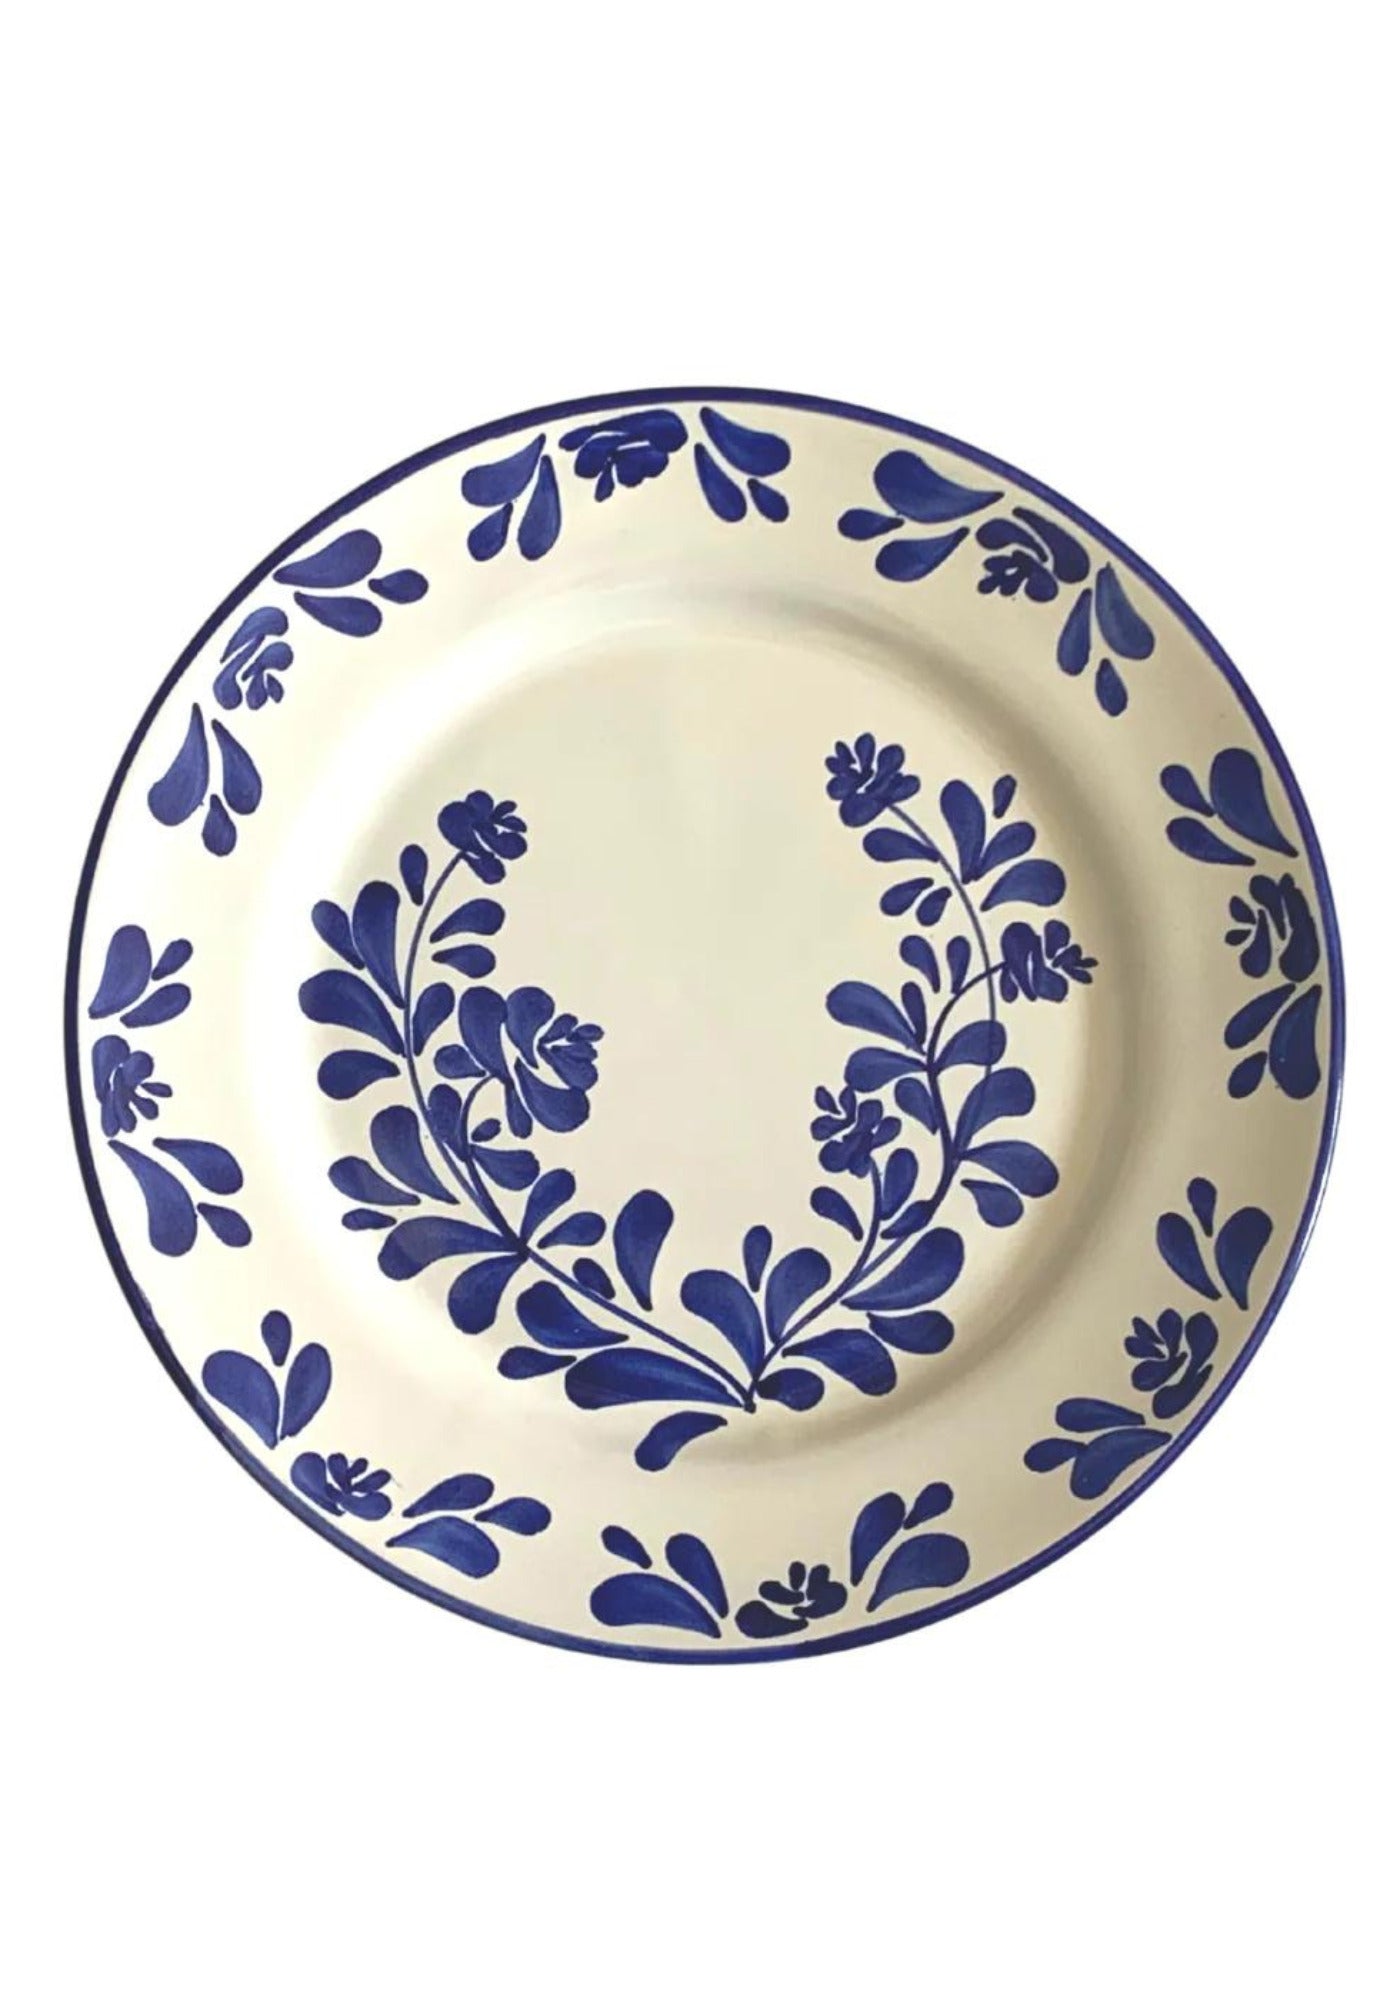 L'assiette creuse en céramique à motif fleurs bleu de chez Molleni